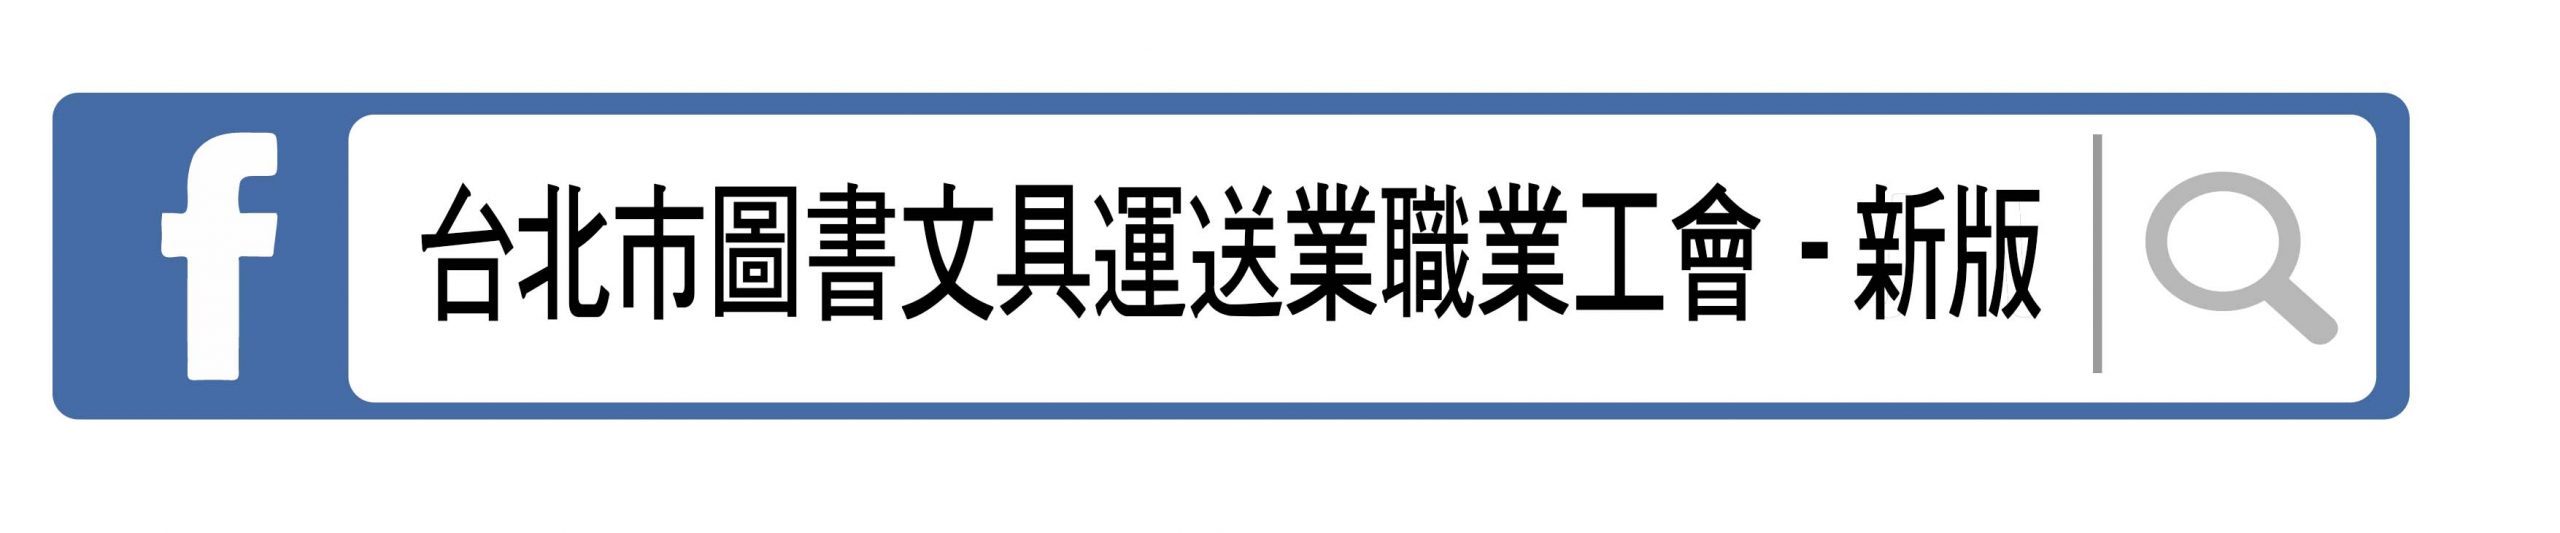 台北市圖書文具運送業職業工會